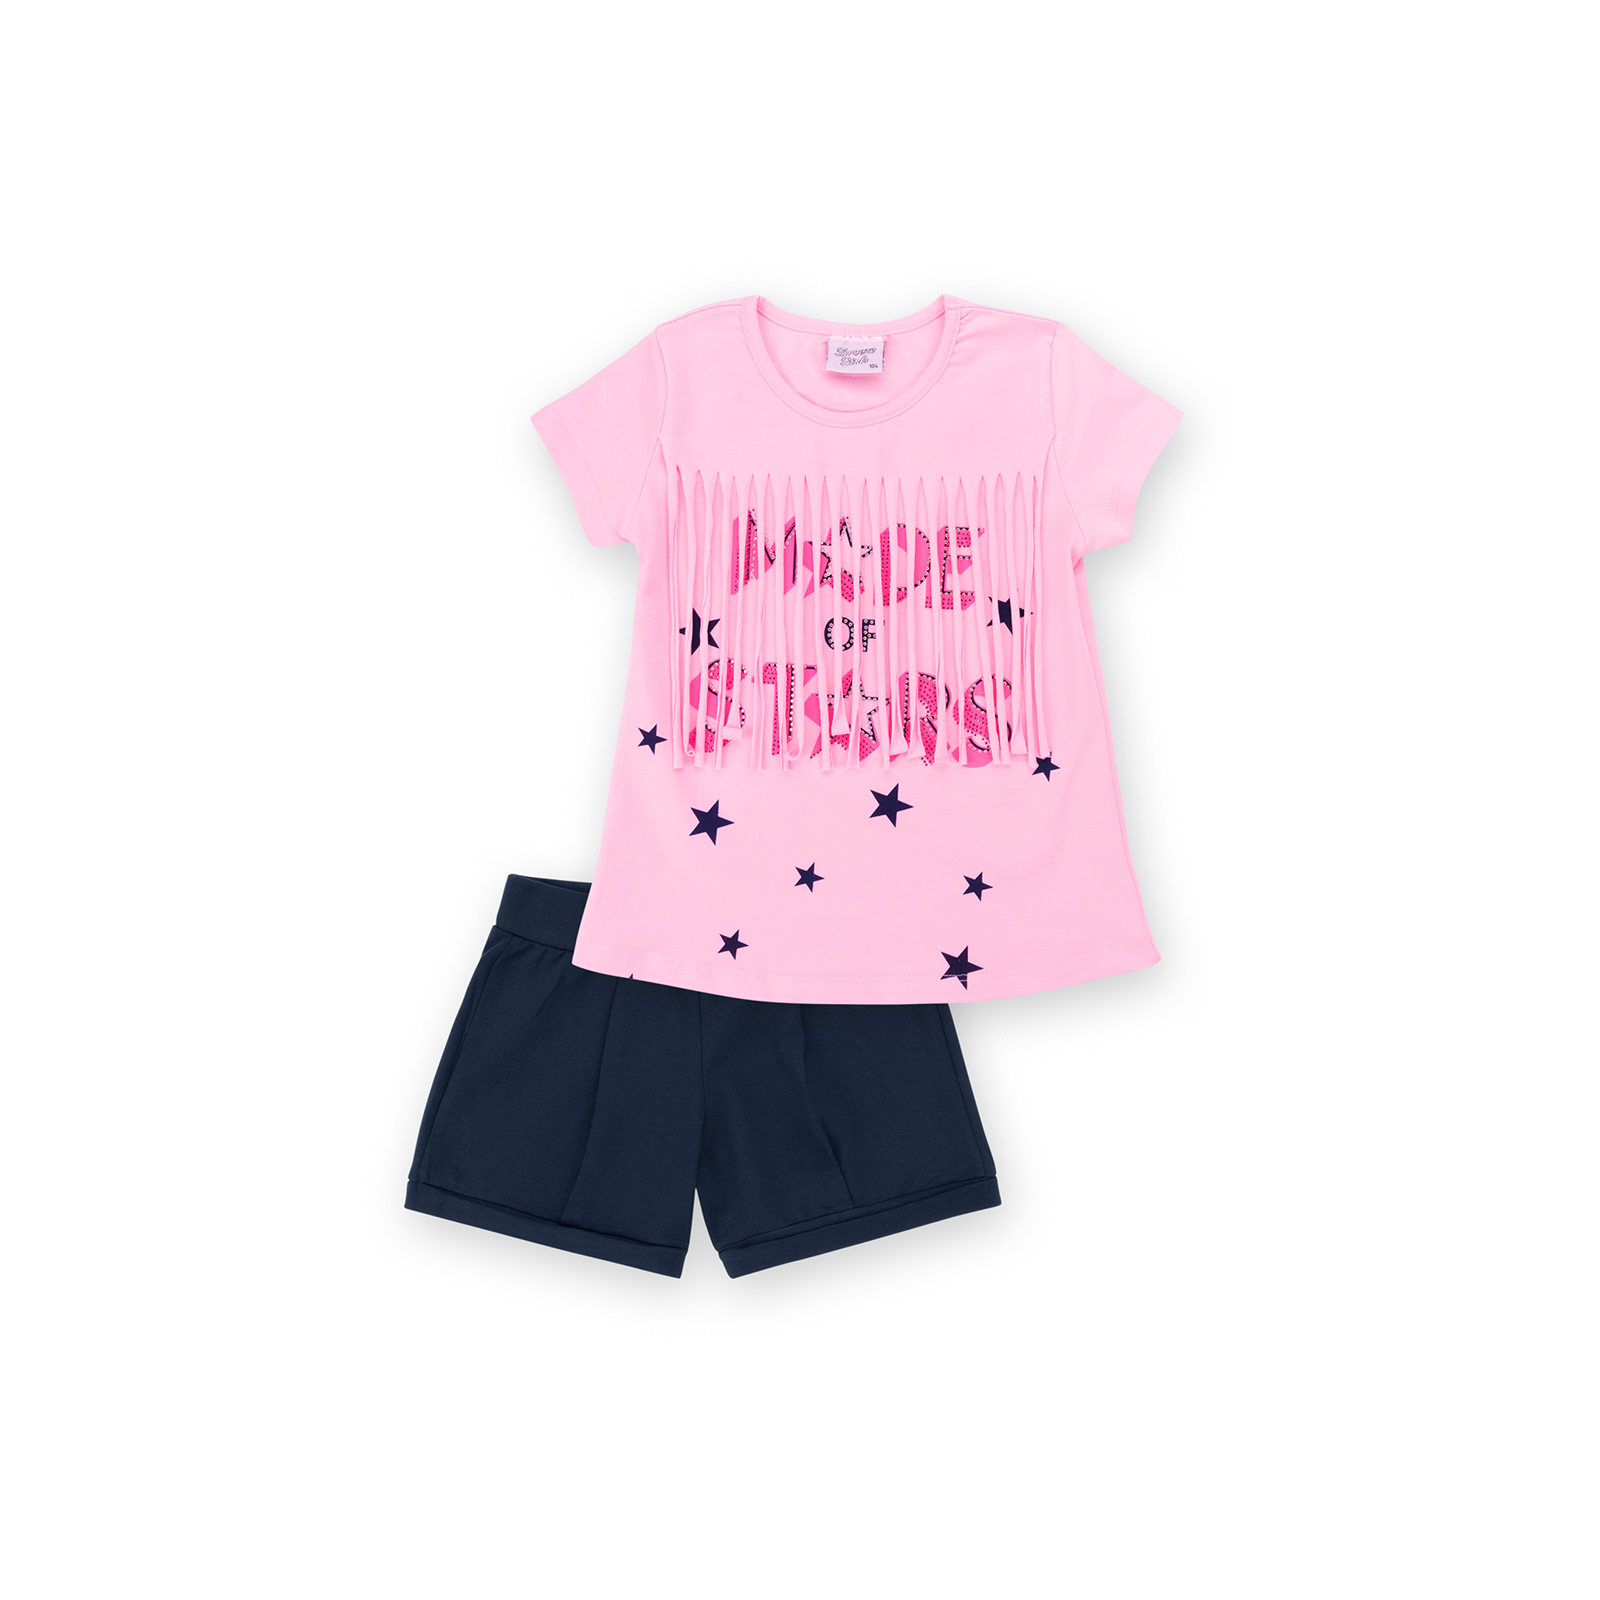 Набір дитячого одягу Breeze футболка із зірочками з шортами (9036-104G-pink)